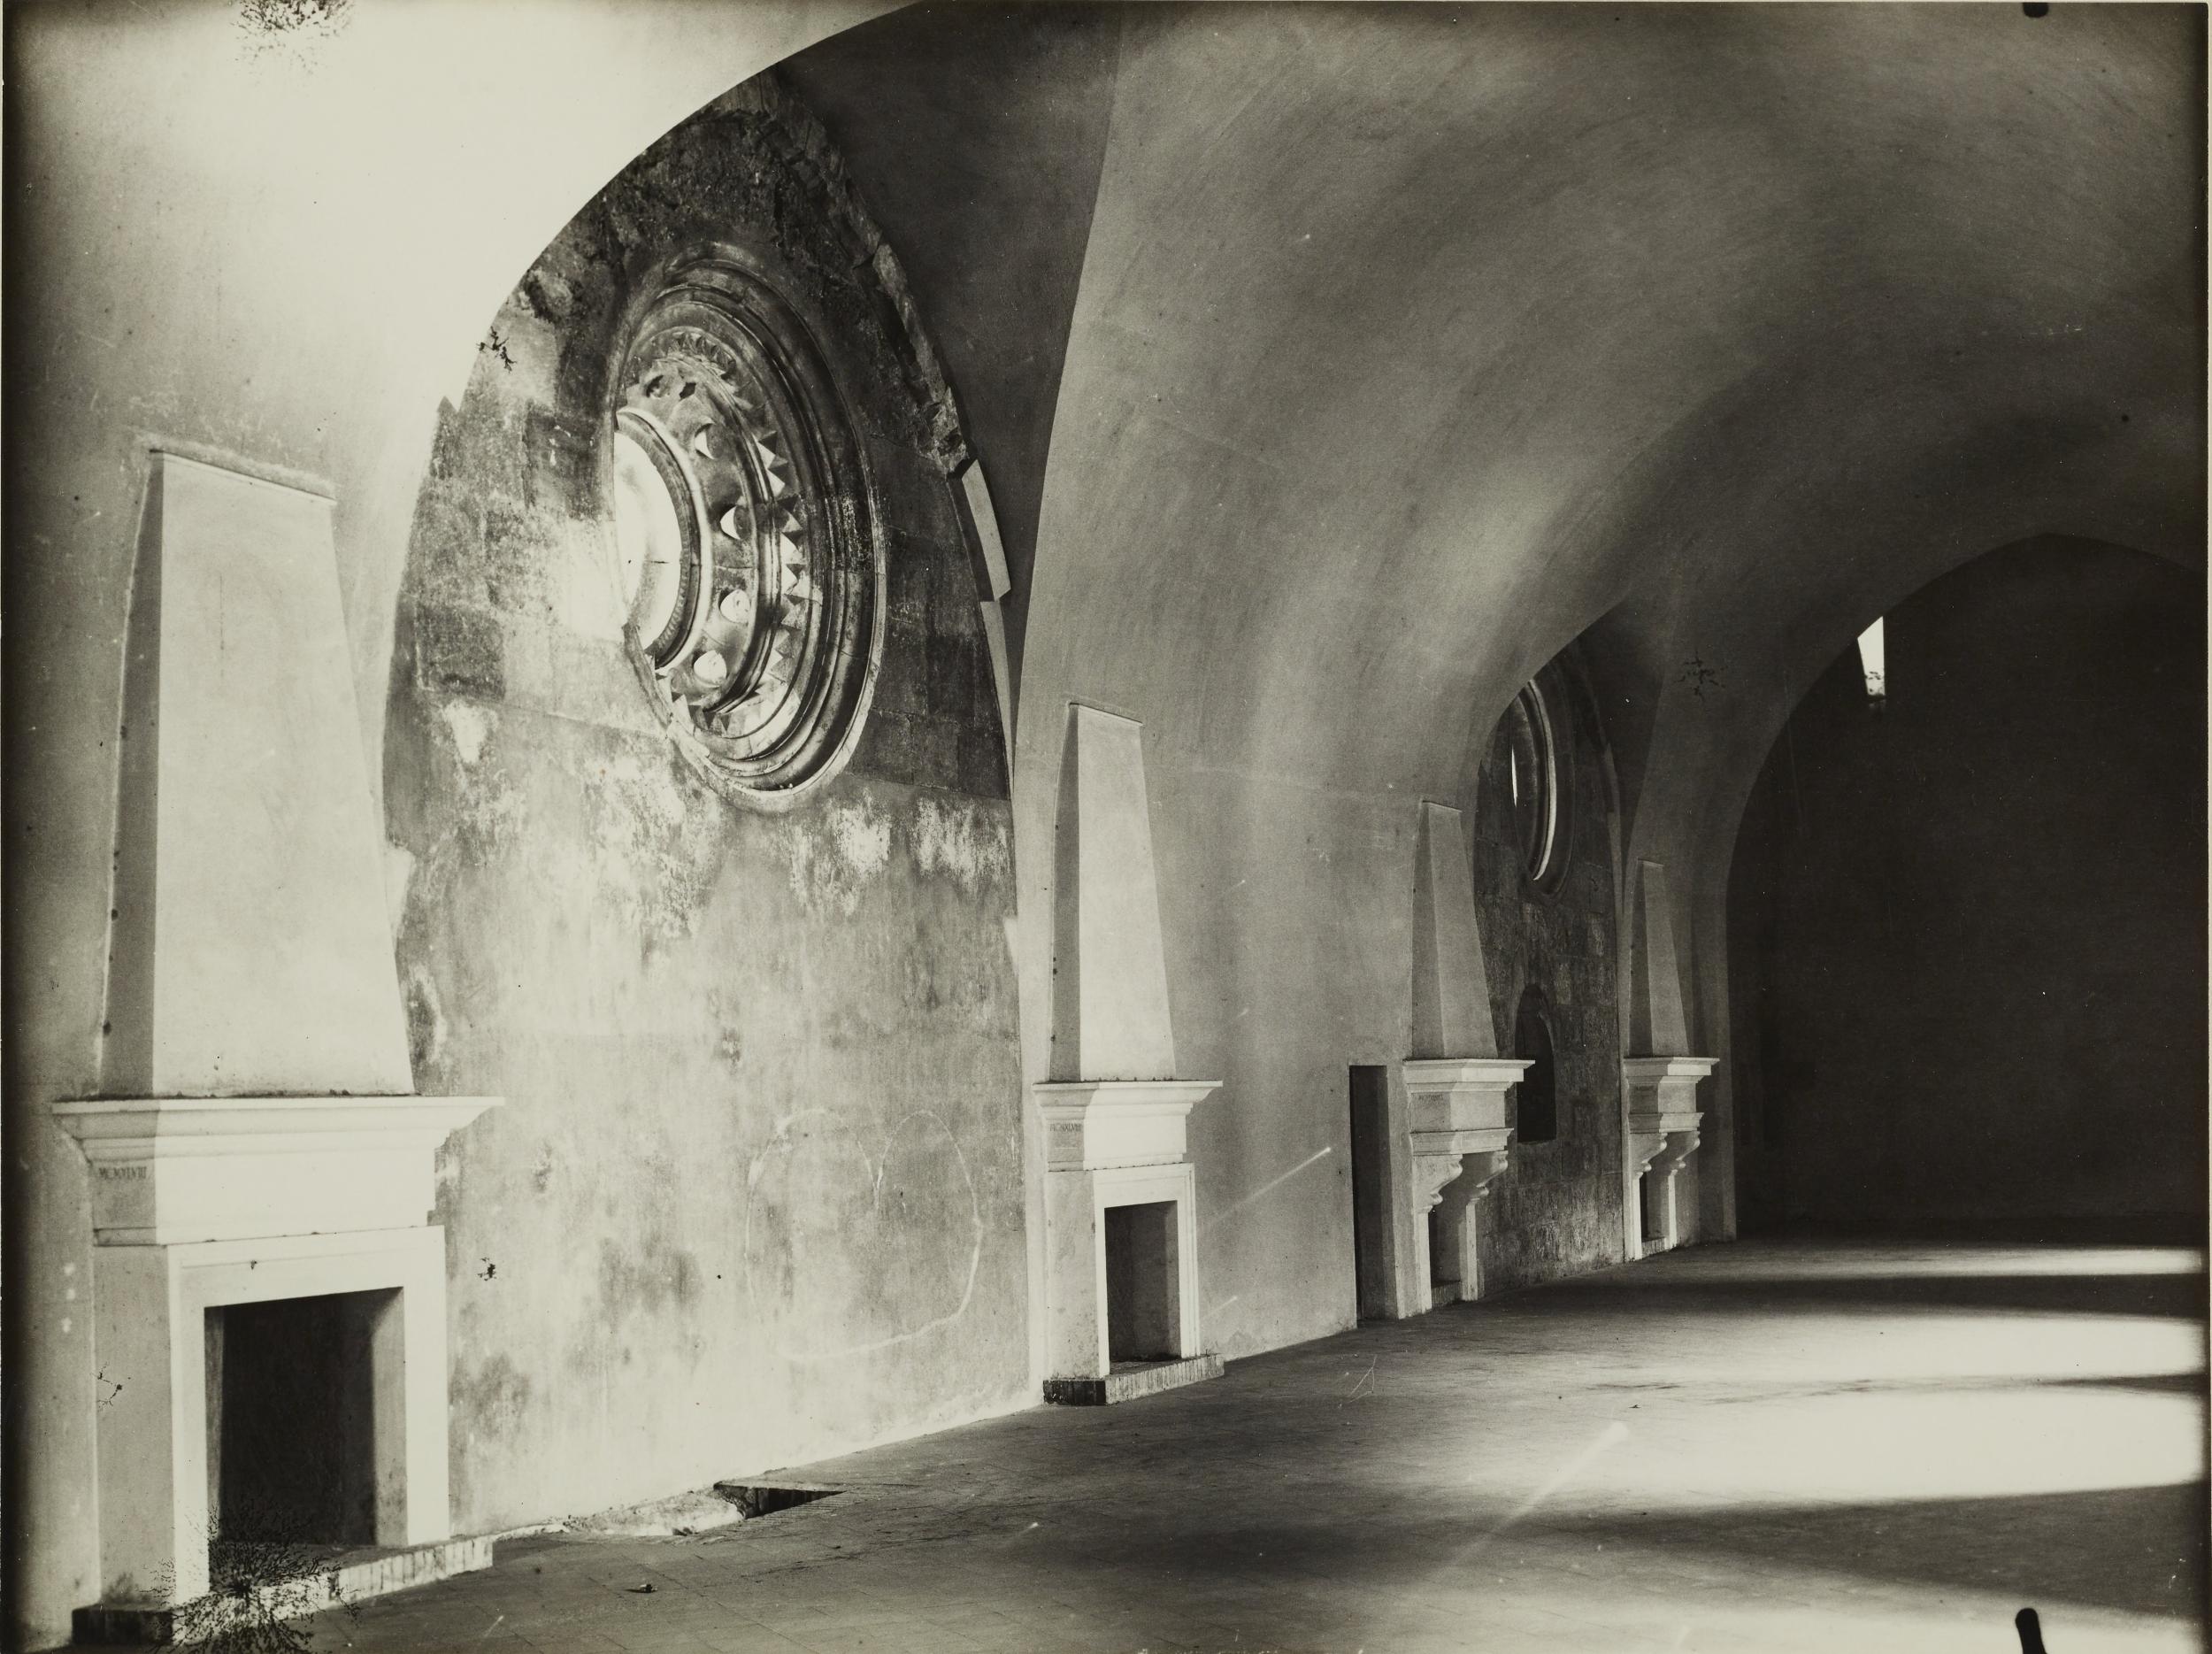 Fotografo non identificato, Bari - Castello Svevo, allestimento della mostra per la XI settimana dei musei, 1968, gelatina ai sali d'argento/carta, MPI6018854